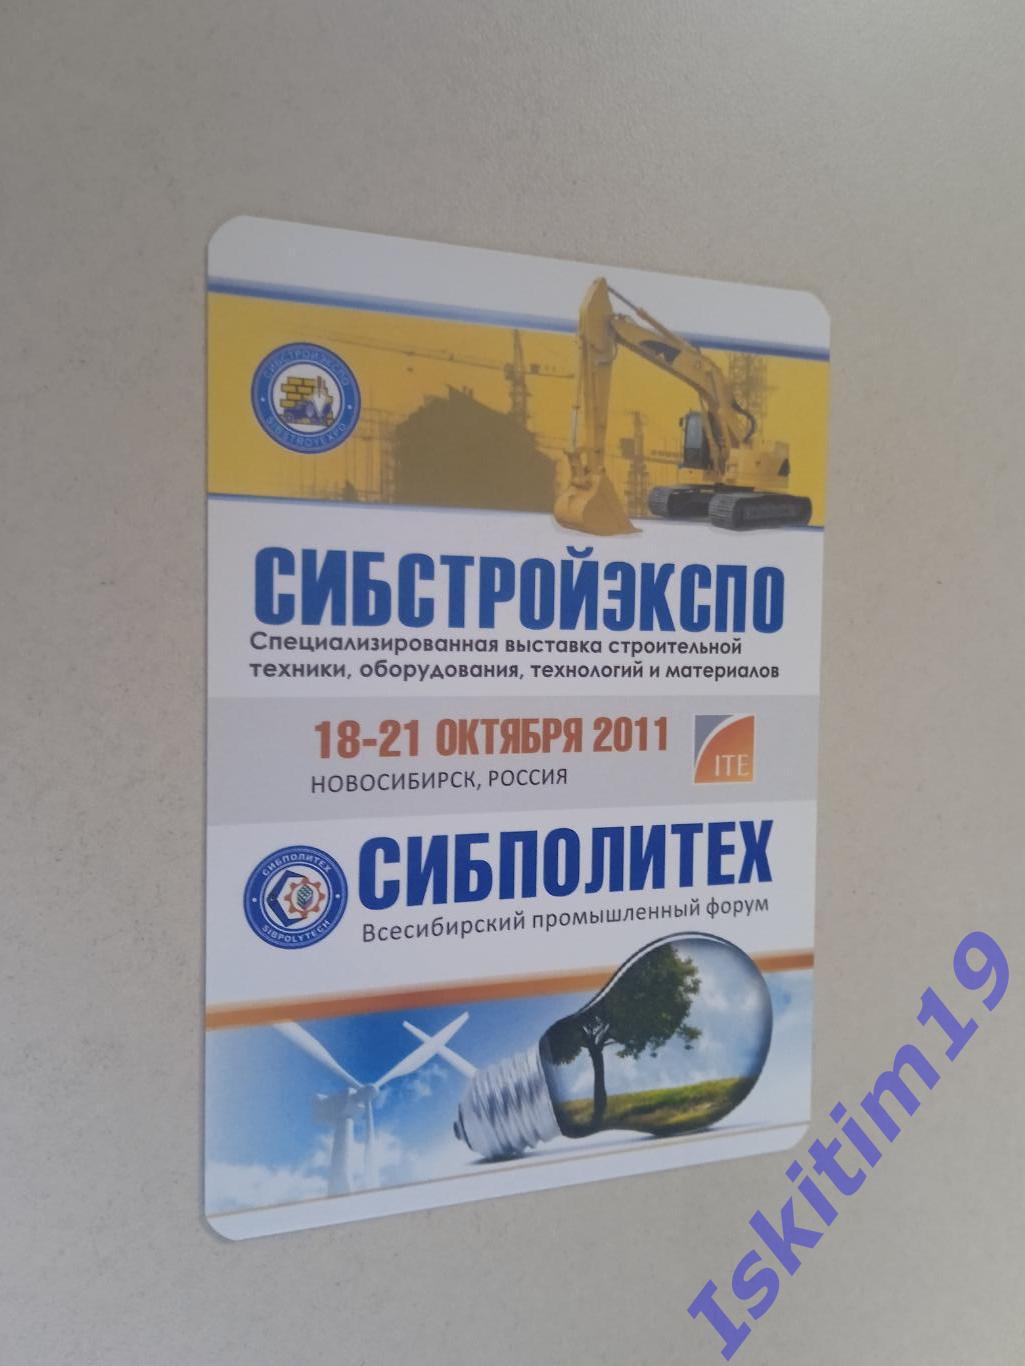 Календарик 2011. Строительная выставка Сибстройэкспо 18-21.10.2011 Новосибирск